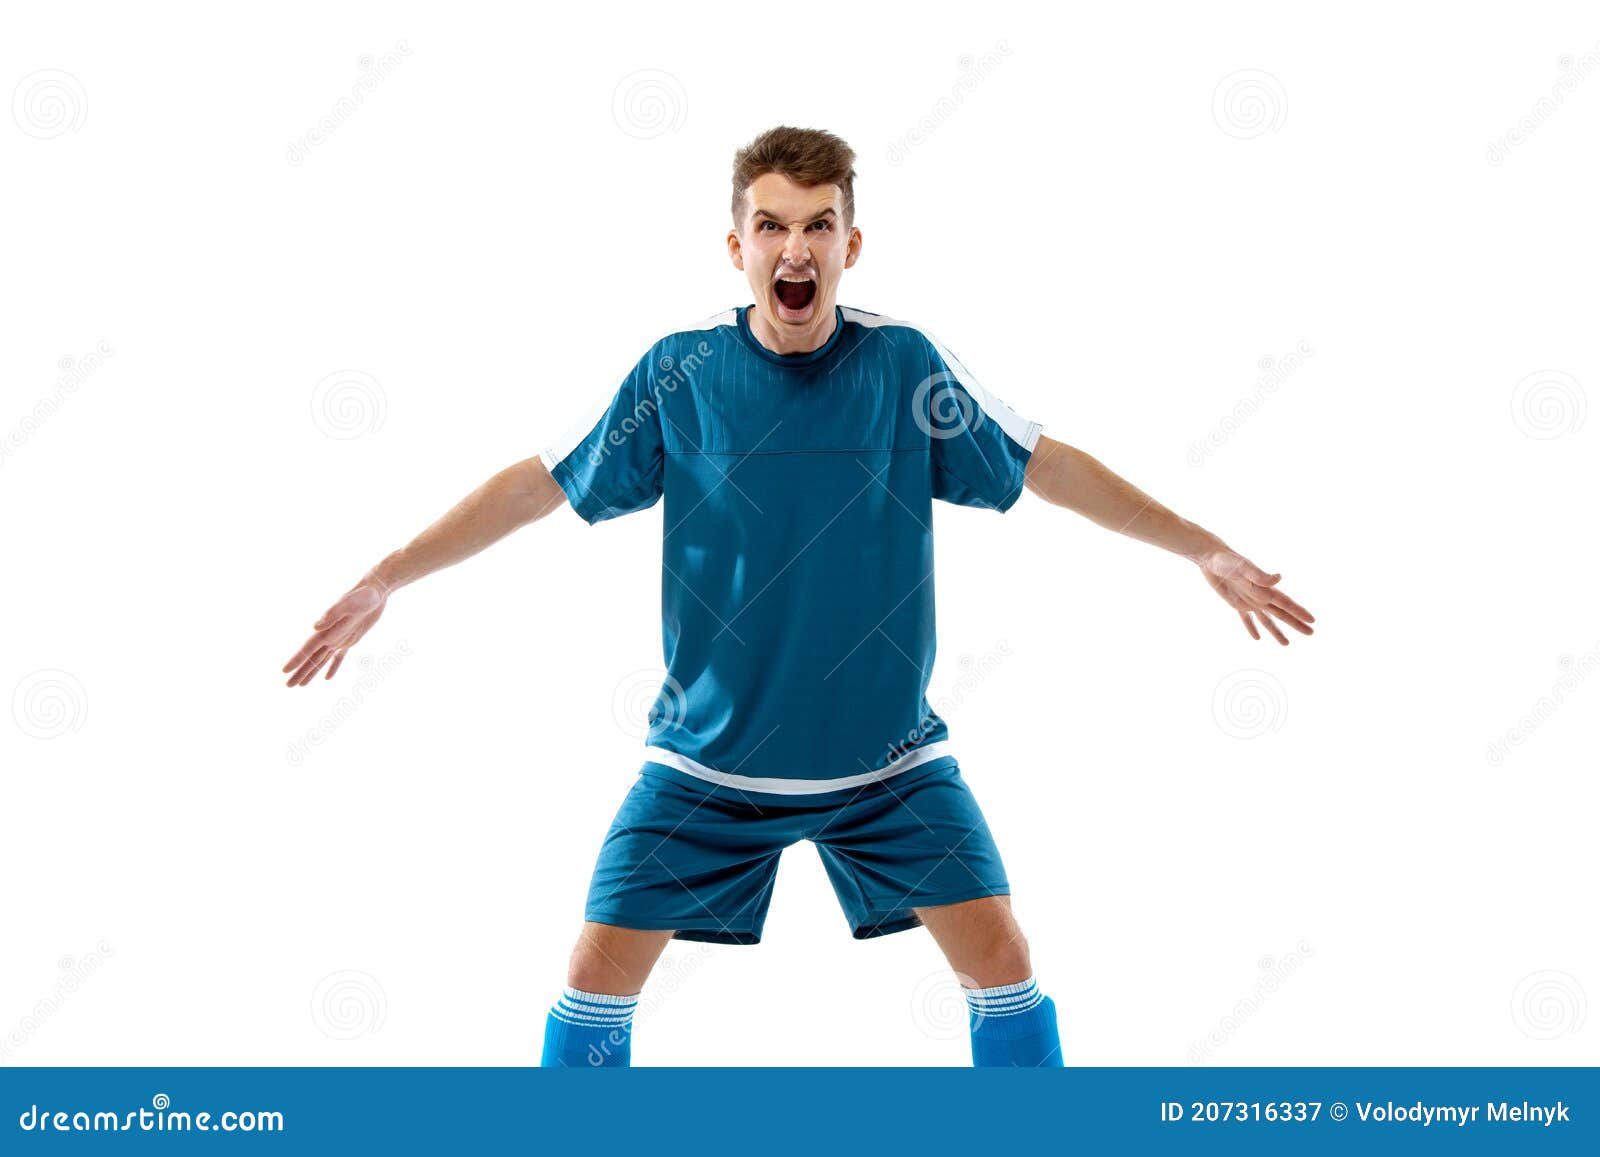 Emoções Engraçadas Do Jogador De Futebol Profissional Isoladas No Fundo Do  Estúdio Branco Excitação No Jogo Foto de Stock - Imagem de efeito, modelo:  207544646